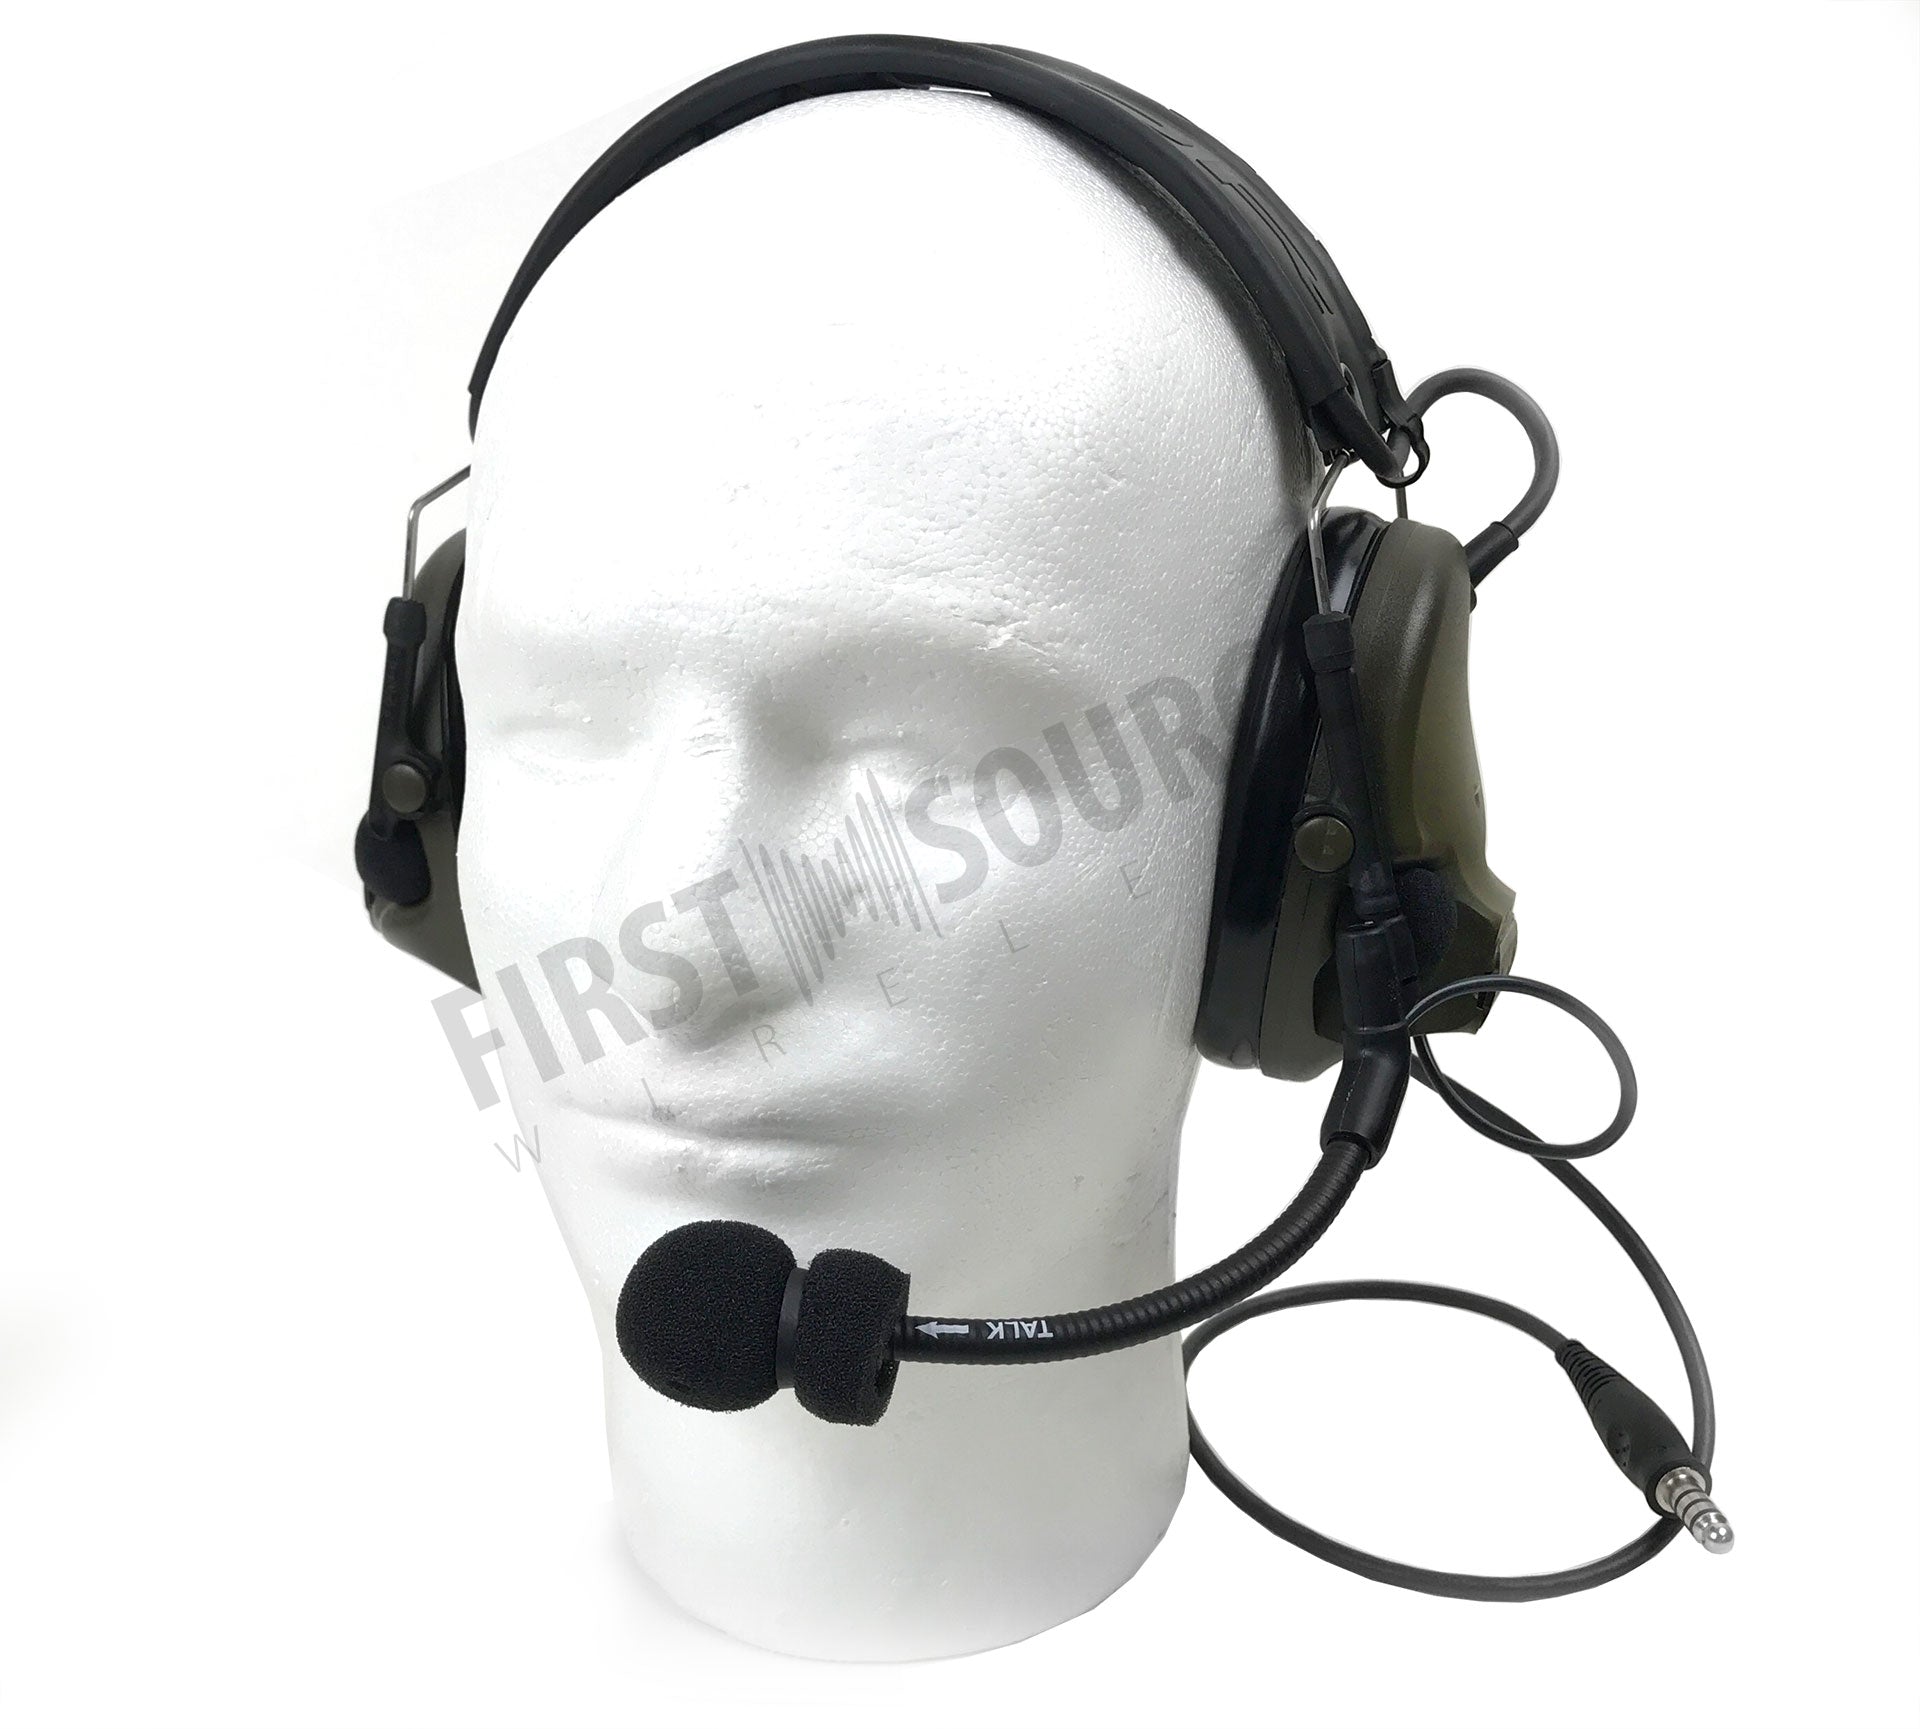 3M PELTOR ComTac V Headset MT20H682FB-47 GN, plegable, cable único, micrófono dinámico estándar, cableado NATO, verde